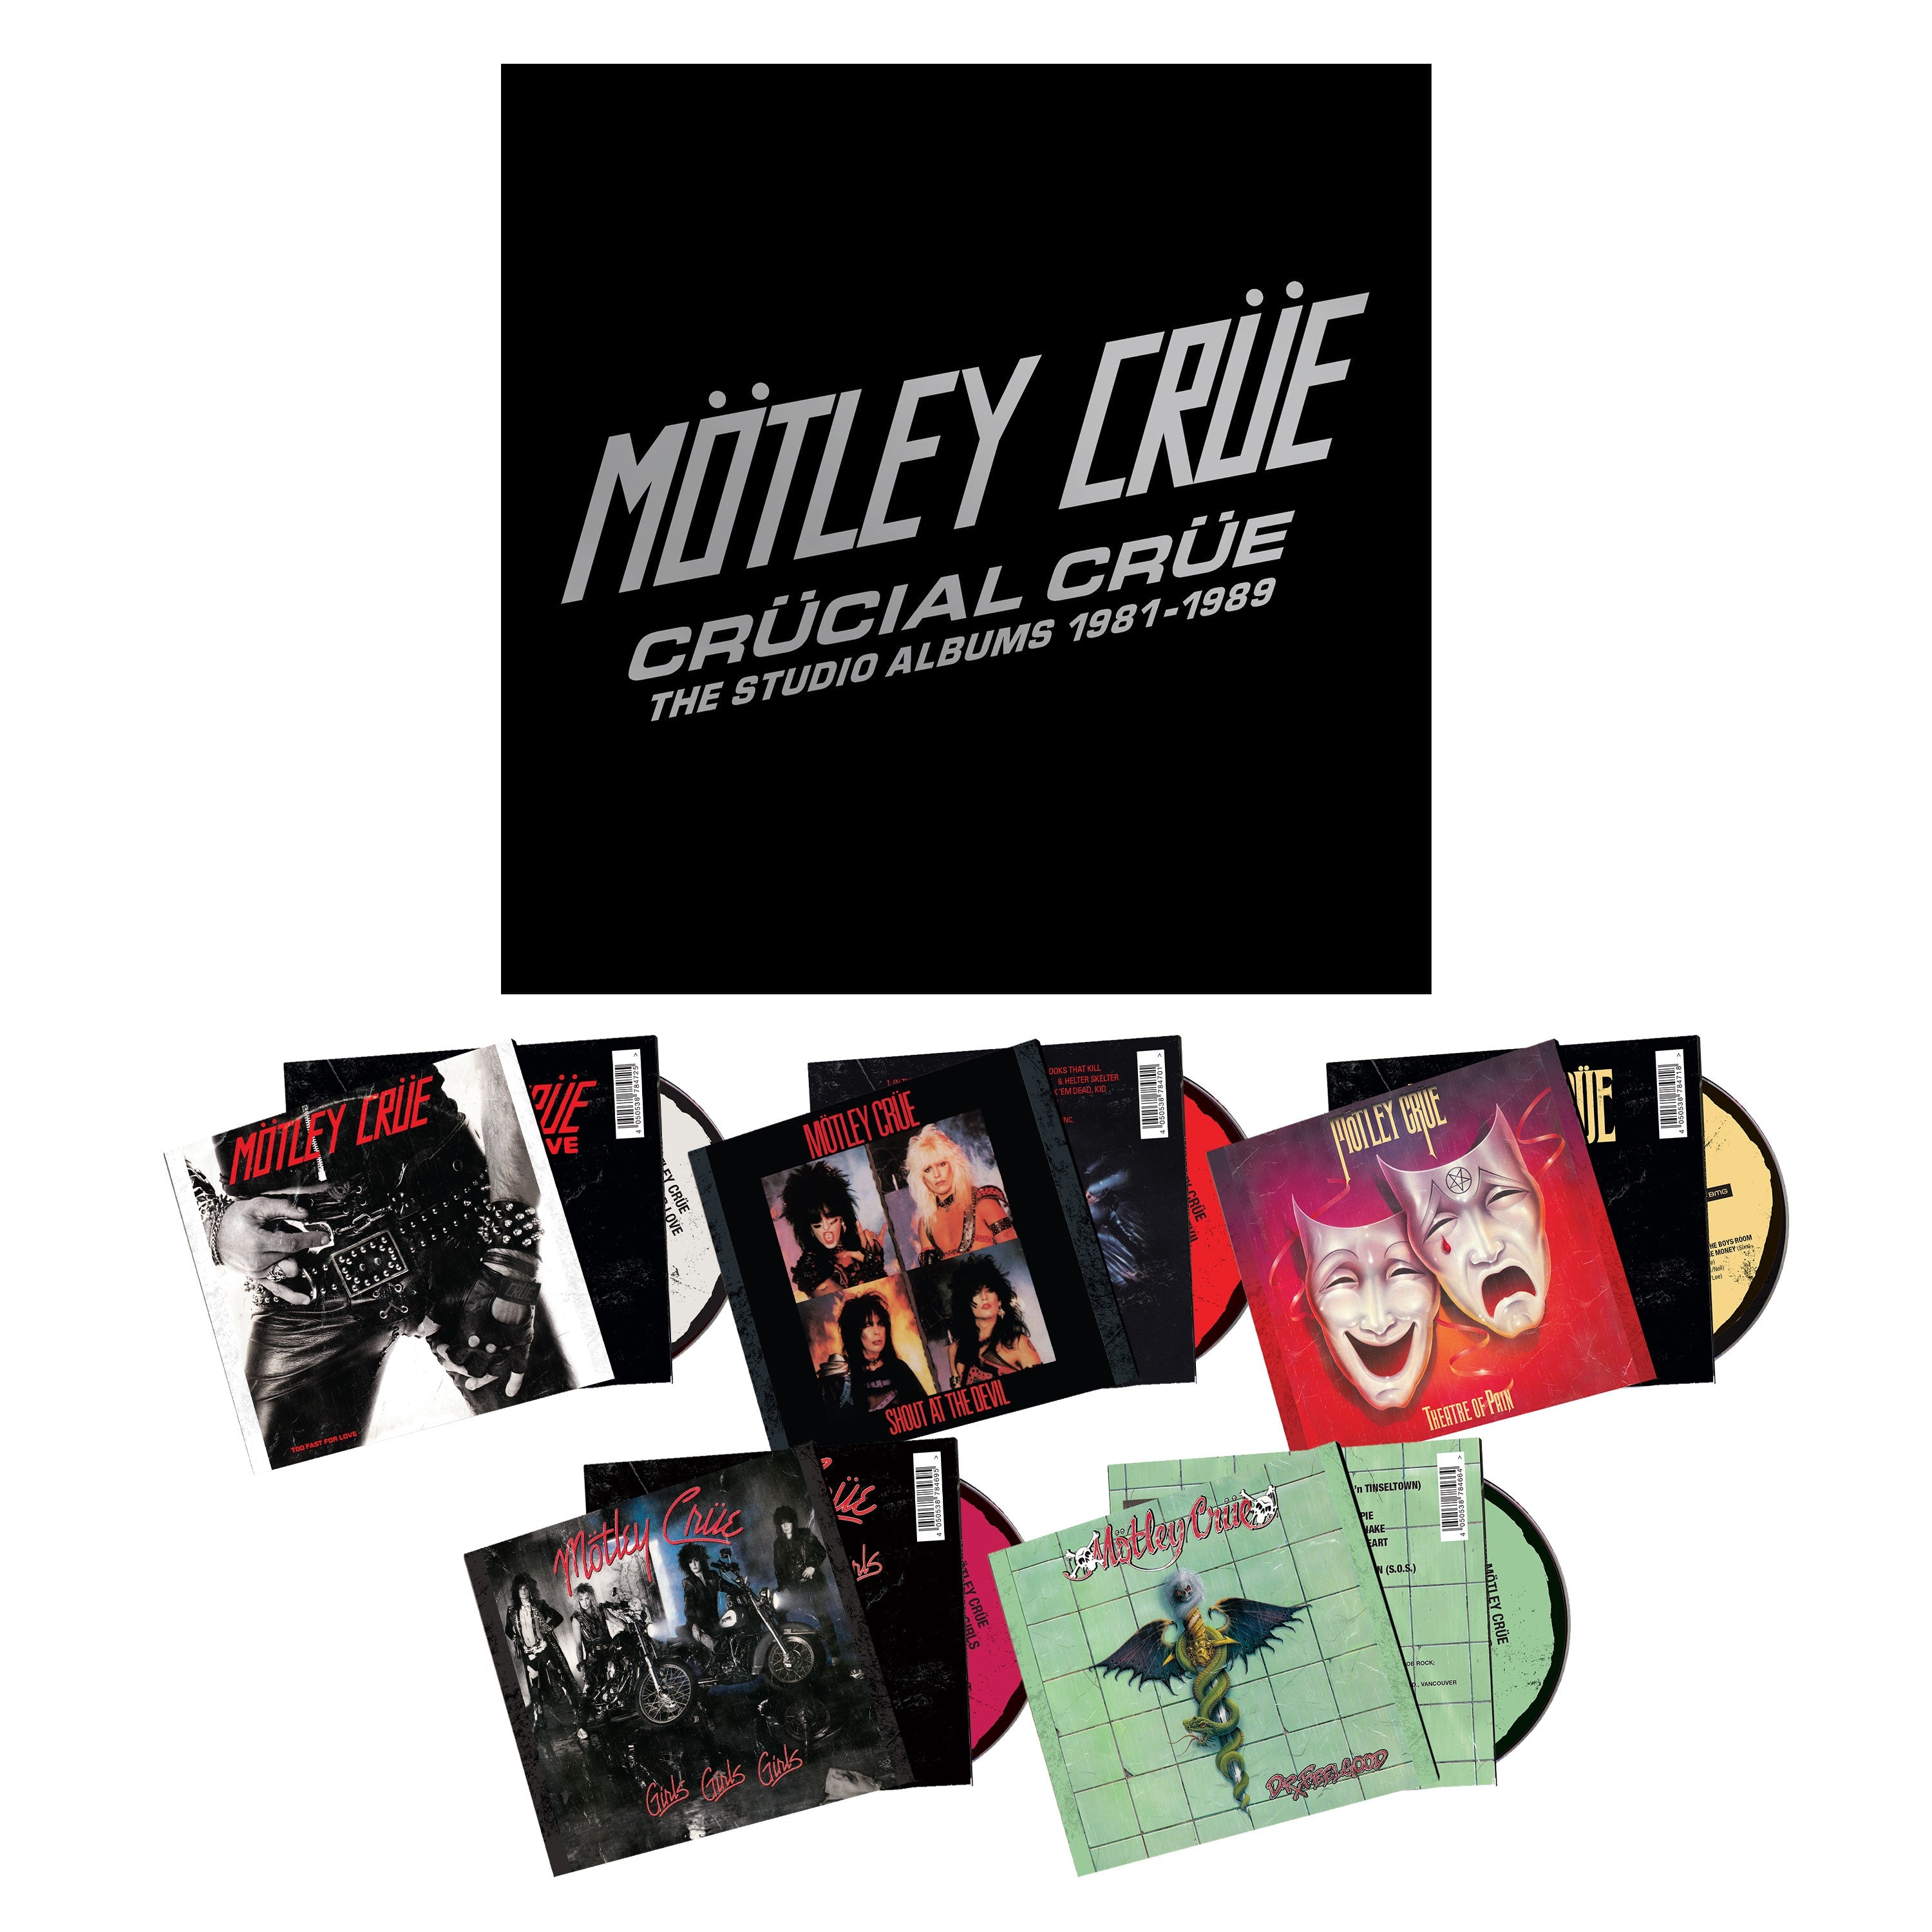 MOTLEY CRUE 'CRUCIAL CRUE - THE STUDIO ALBUMS 1981-1989' CD BOX SET